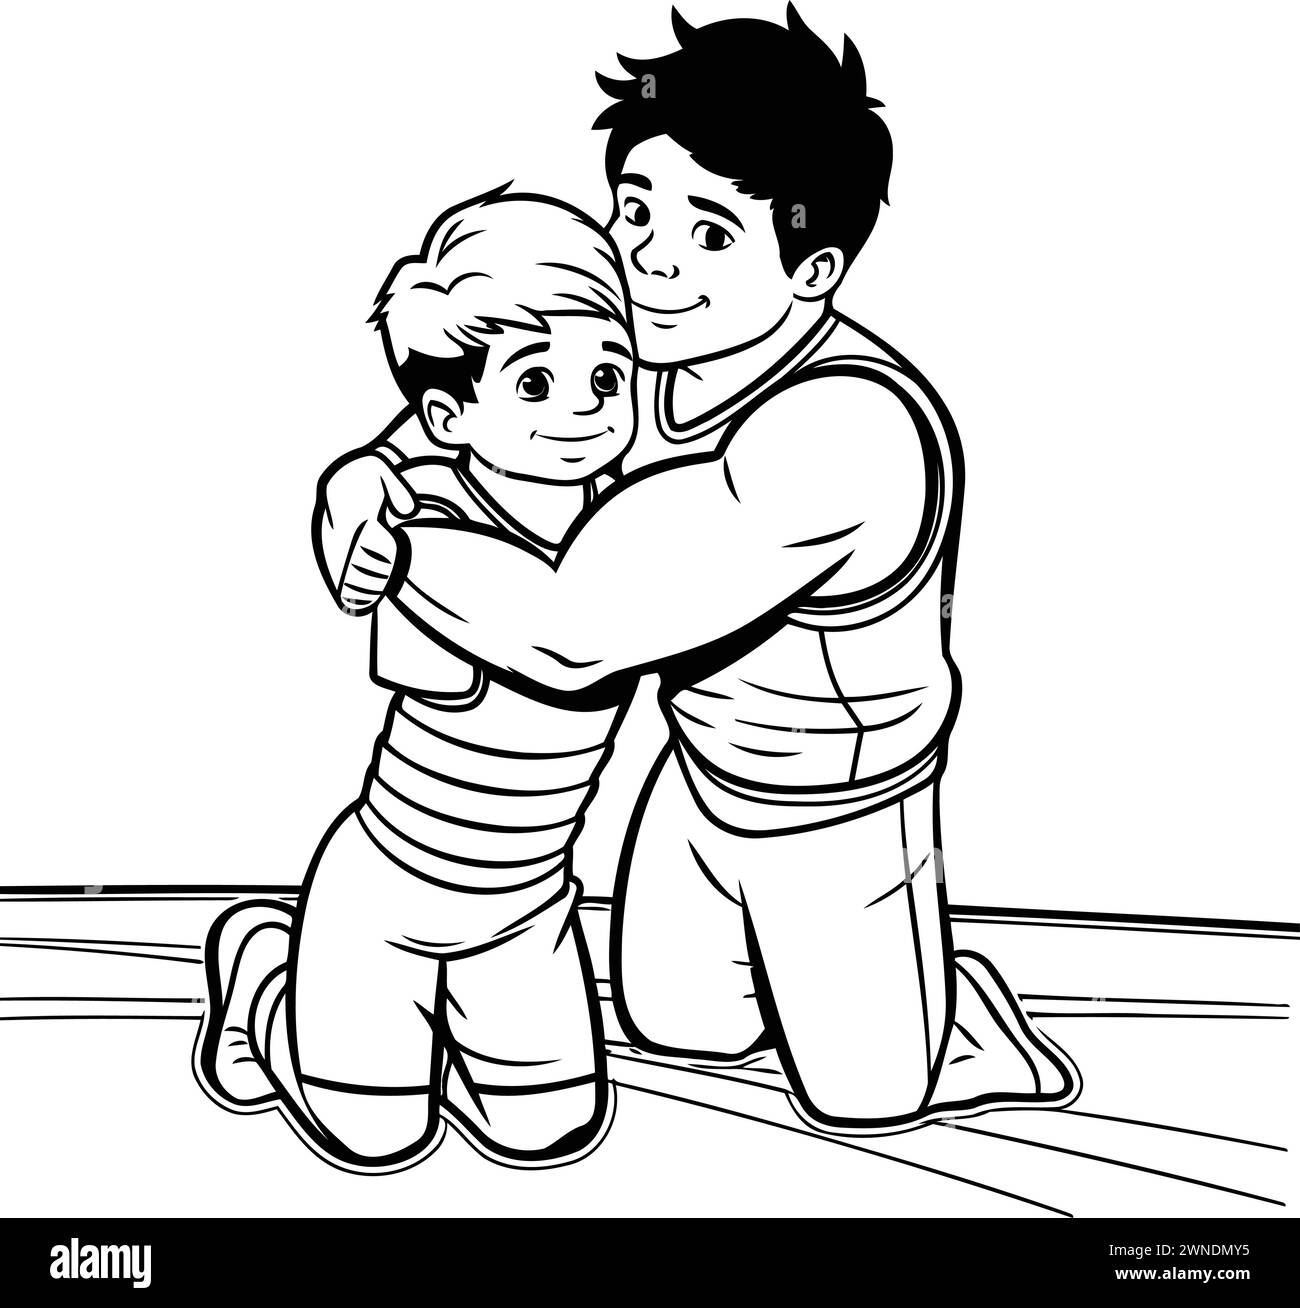 Vater und Sohn. Vektor-Illustration eines Vaters und Sohnes, die sich umarmen. Stock Vektor